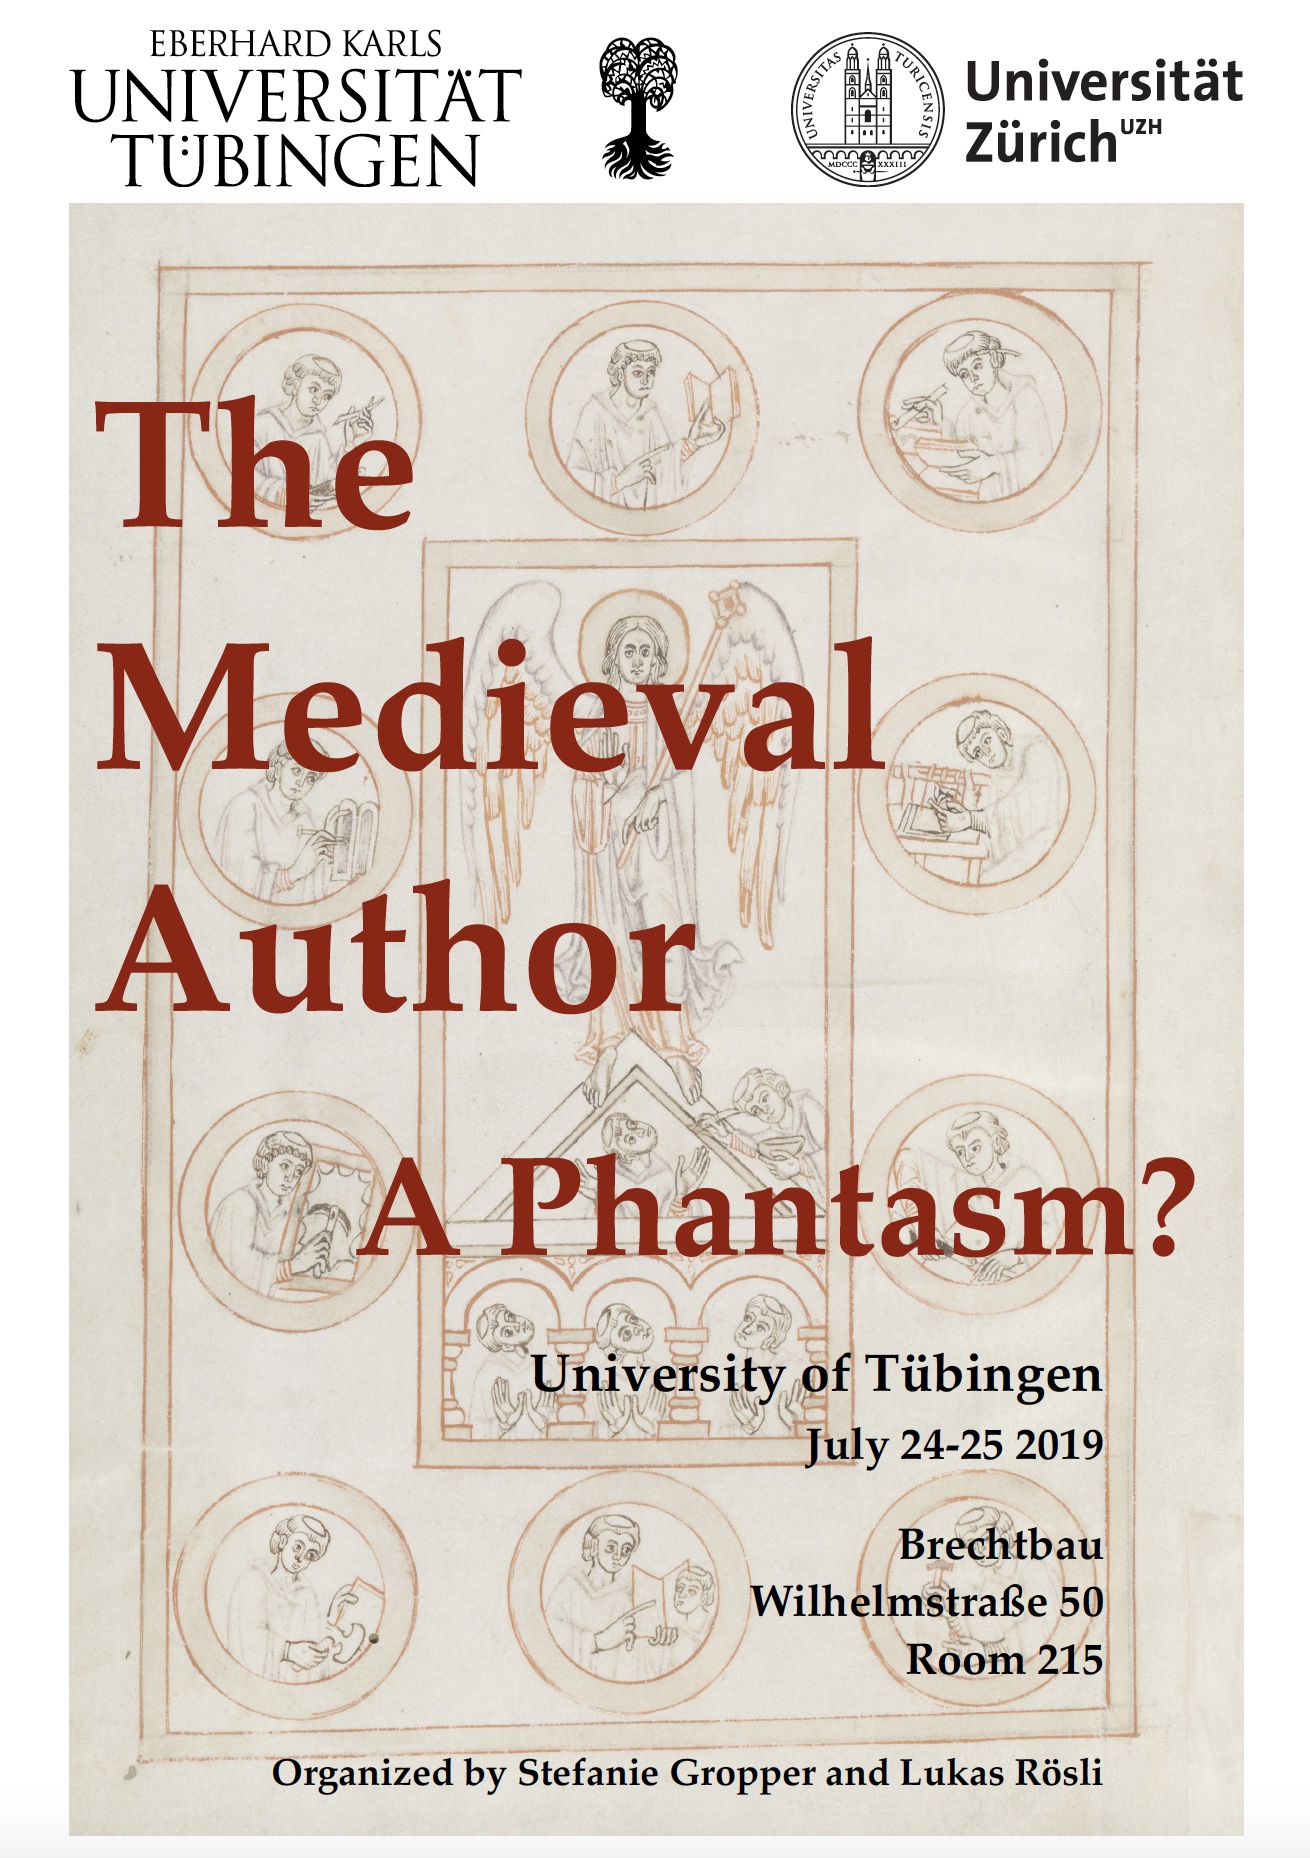 The Medieval Author - A Phantasm?